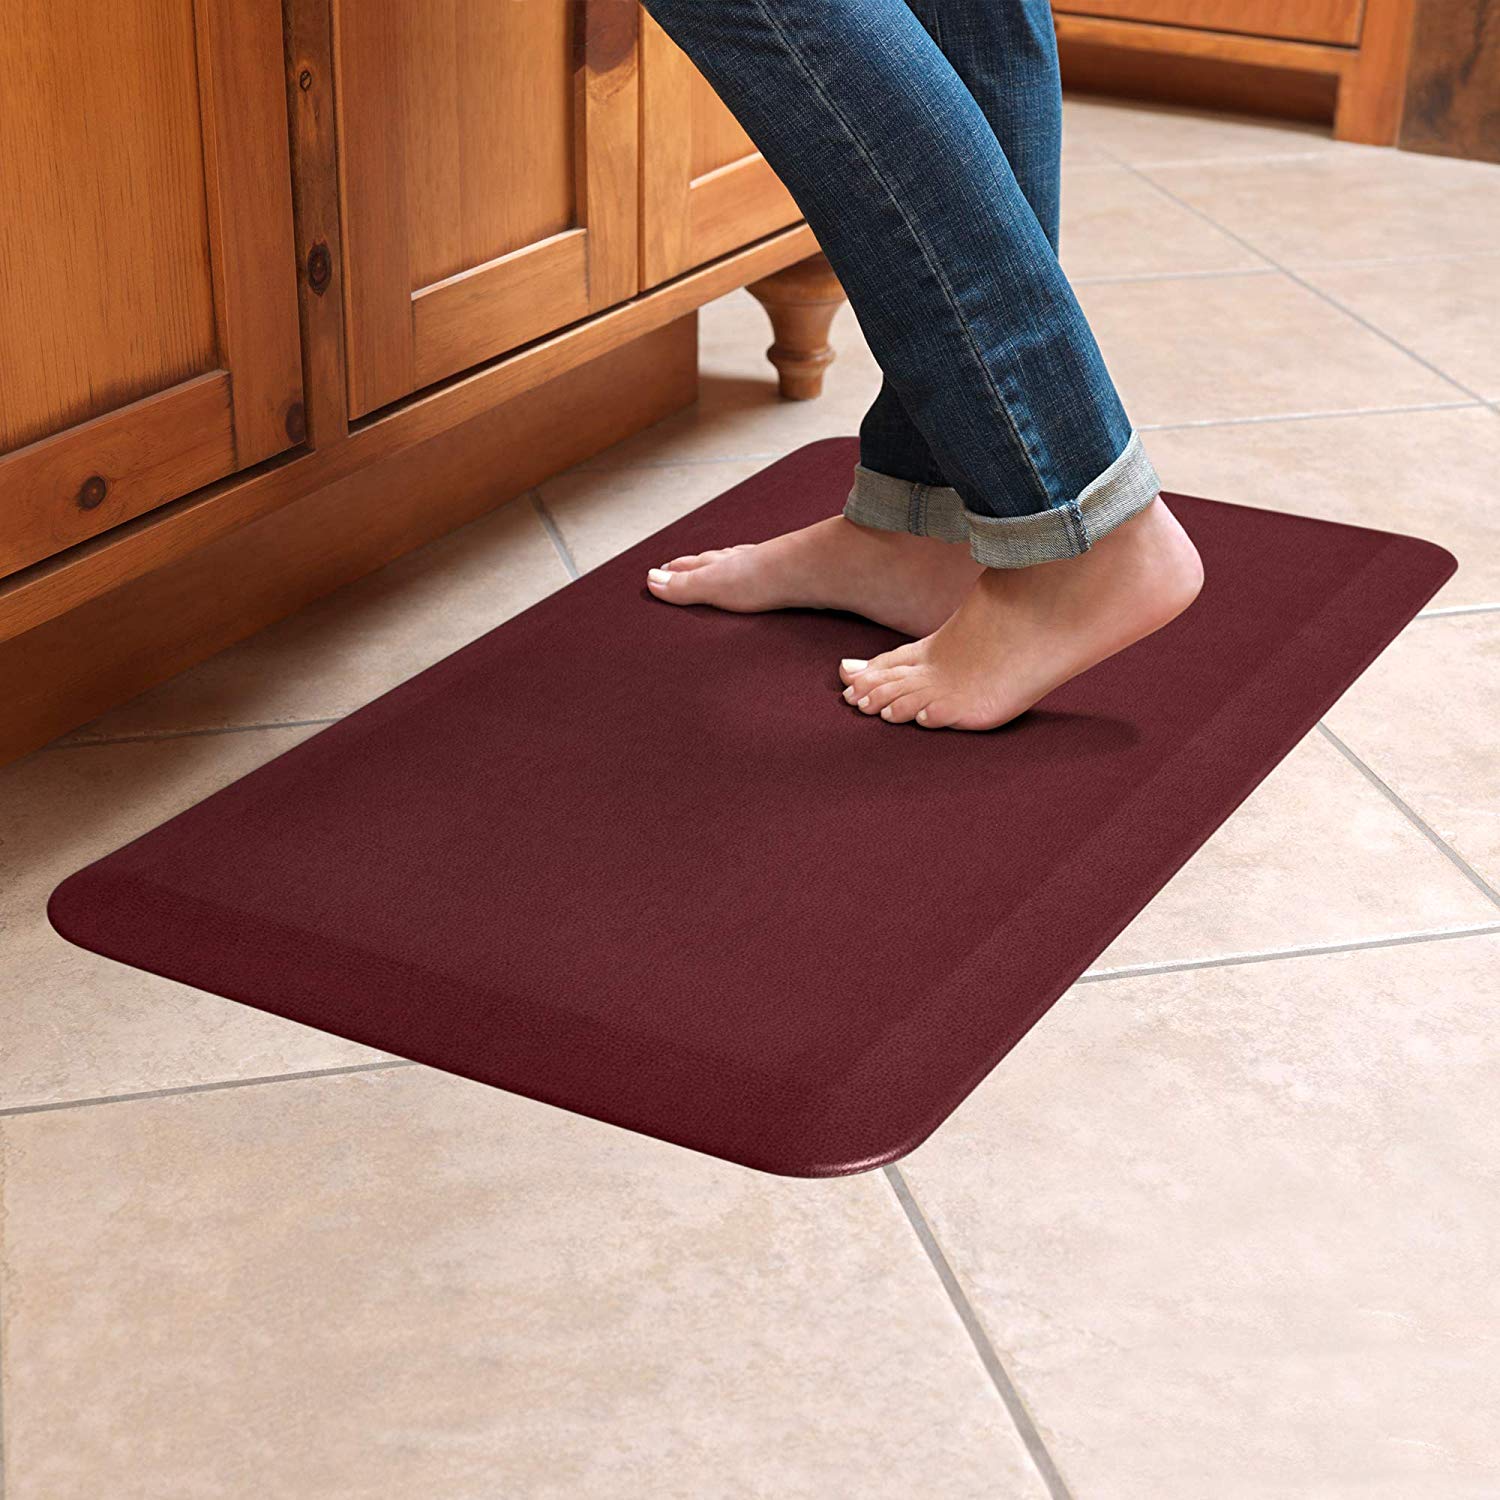 Ergonomic Non-Toxic Waterproof PVC Non Slip Washable For Indoor Outdoor Comfort Heavy Duty Standing Mats Simple Being Anti Fatigue Kitchen Floor Mat 